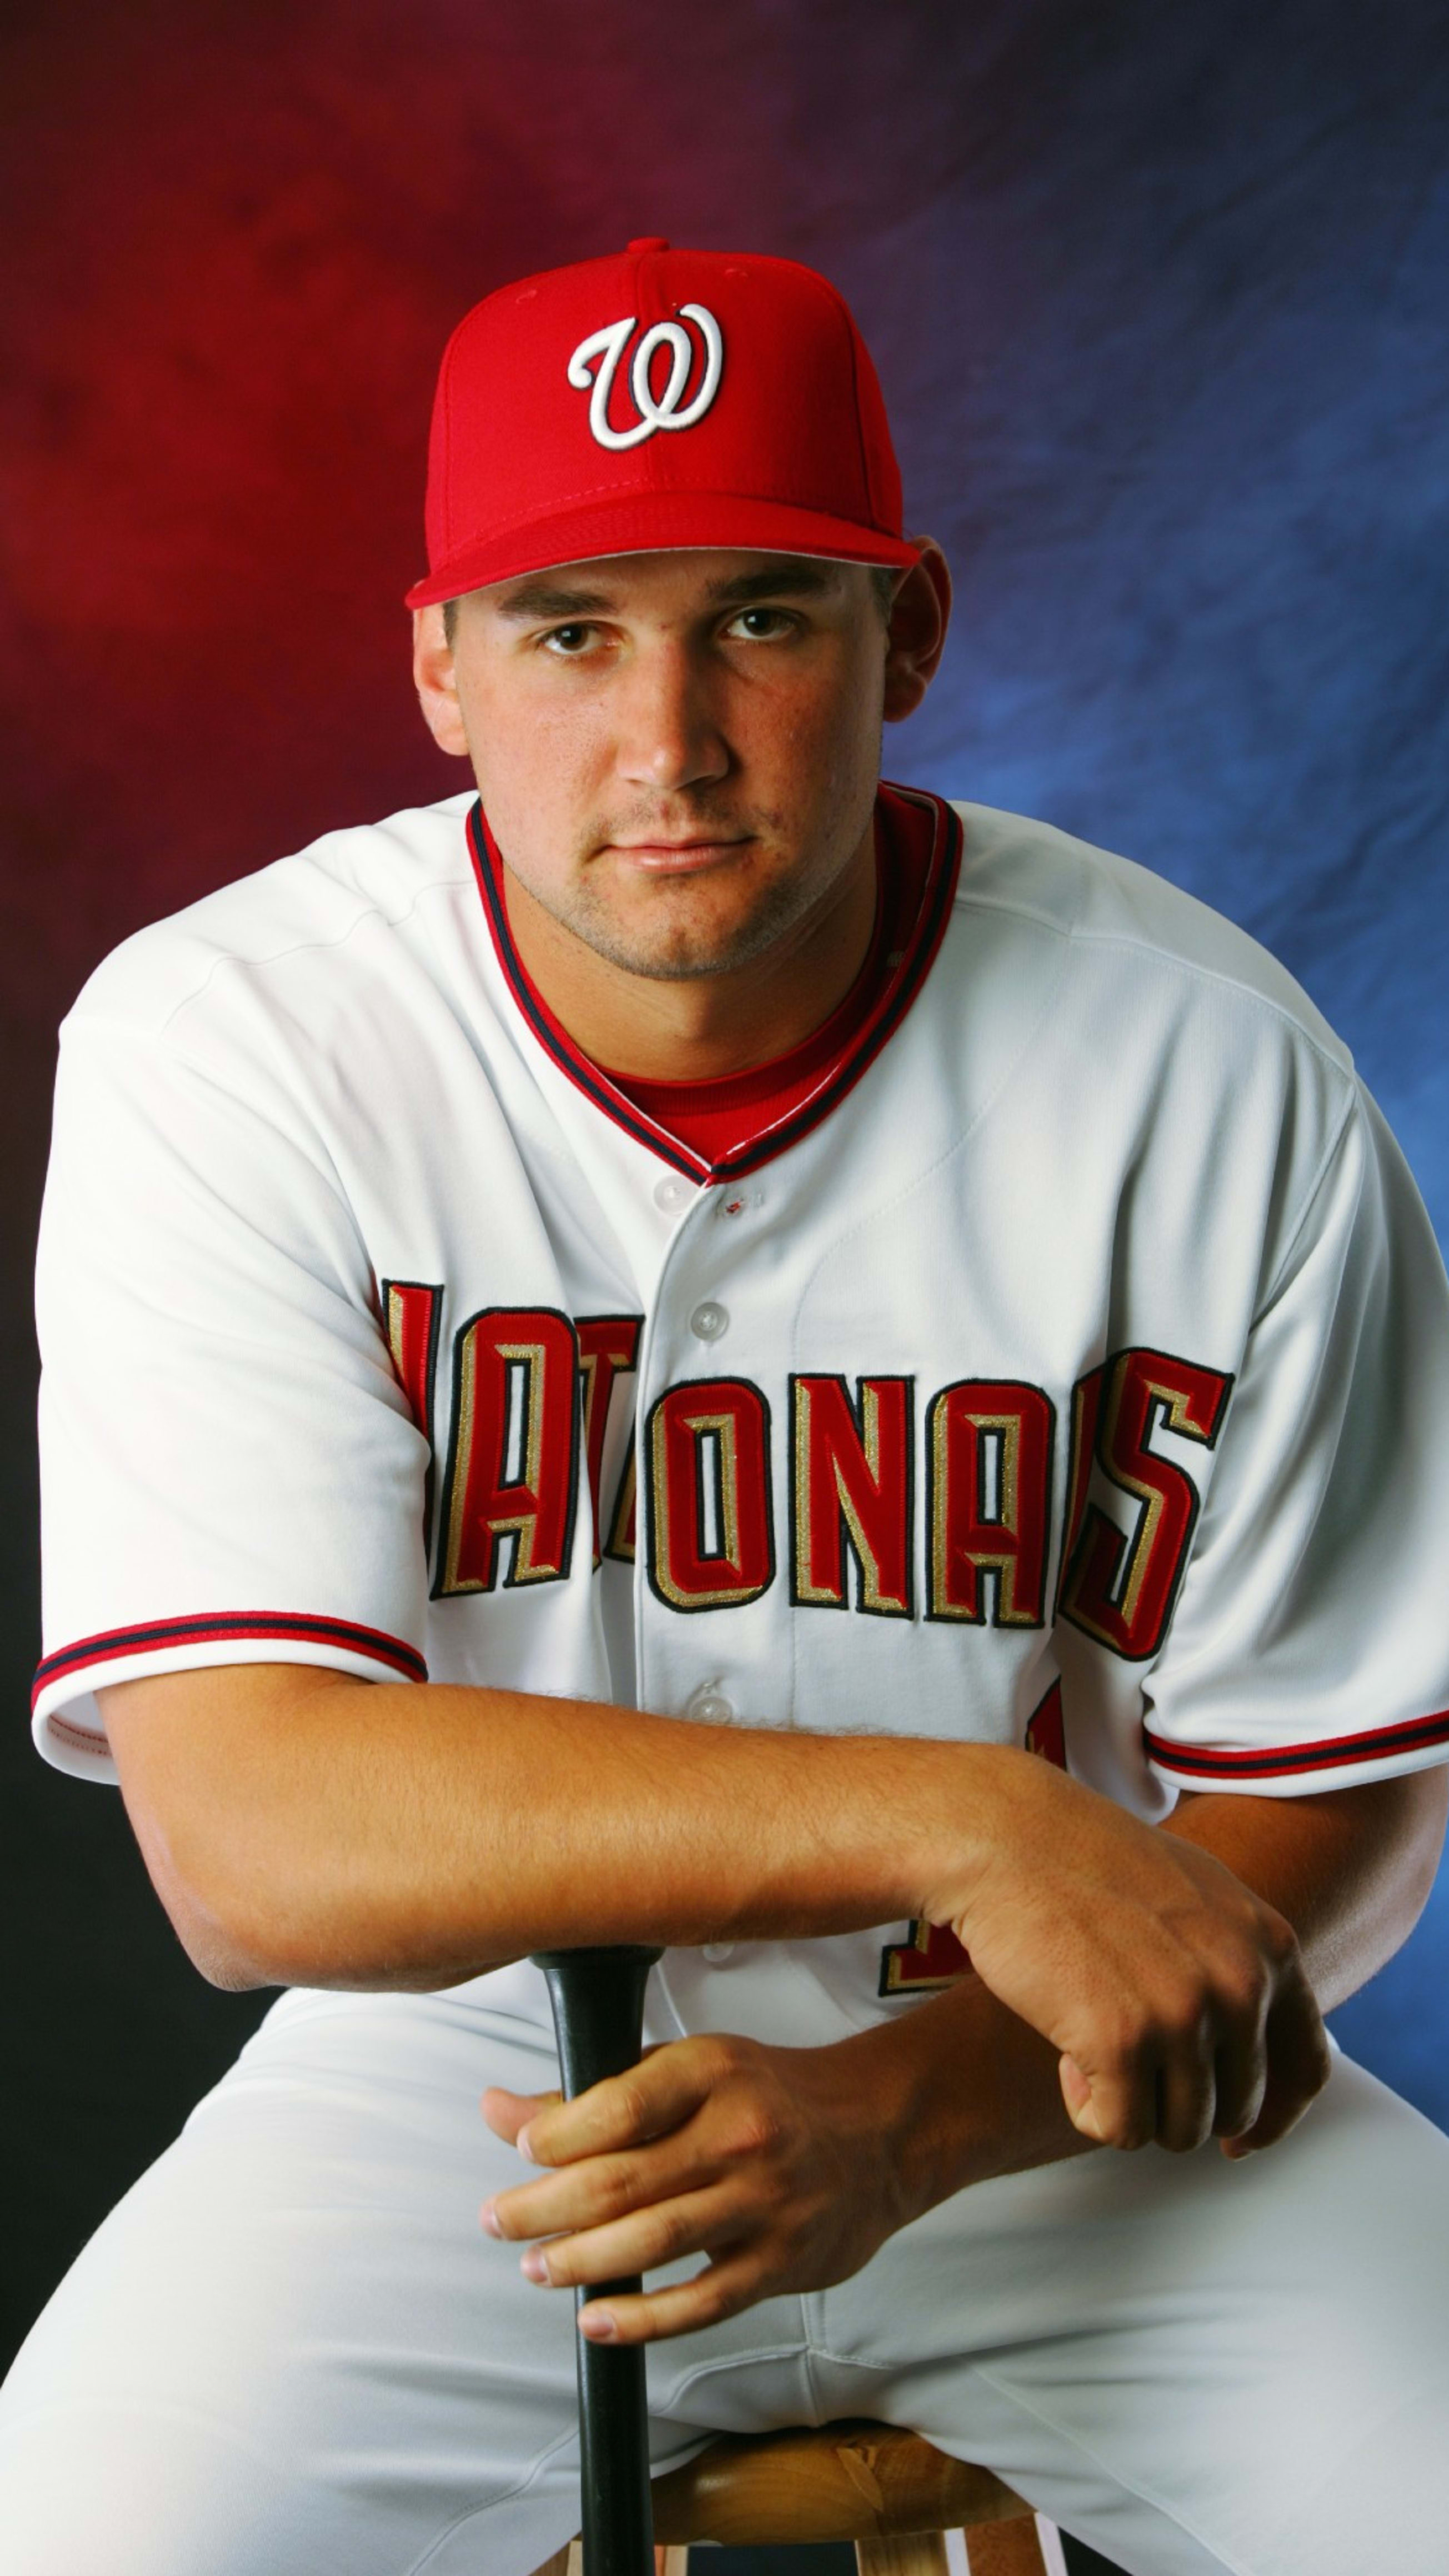 MLB Stories - Ryan Zimmerman career timeline